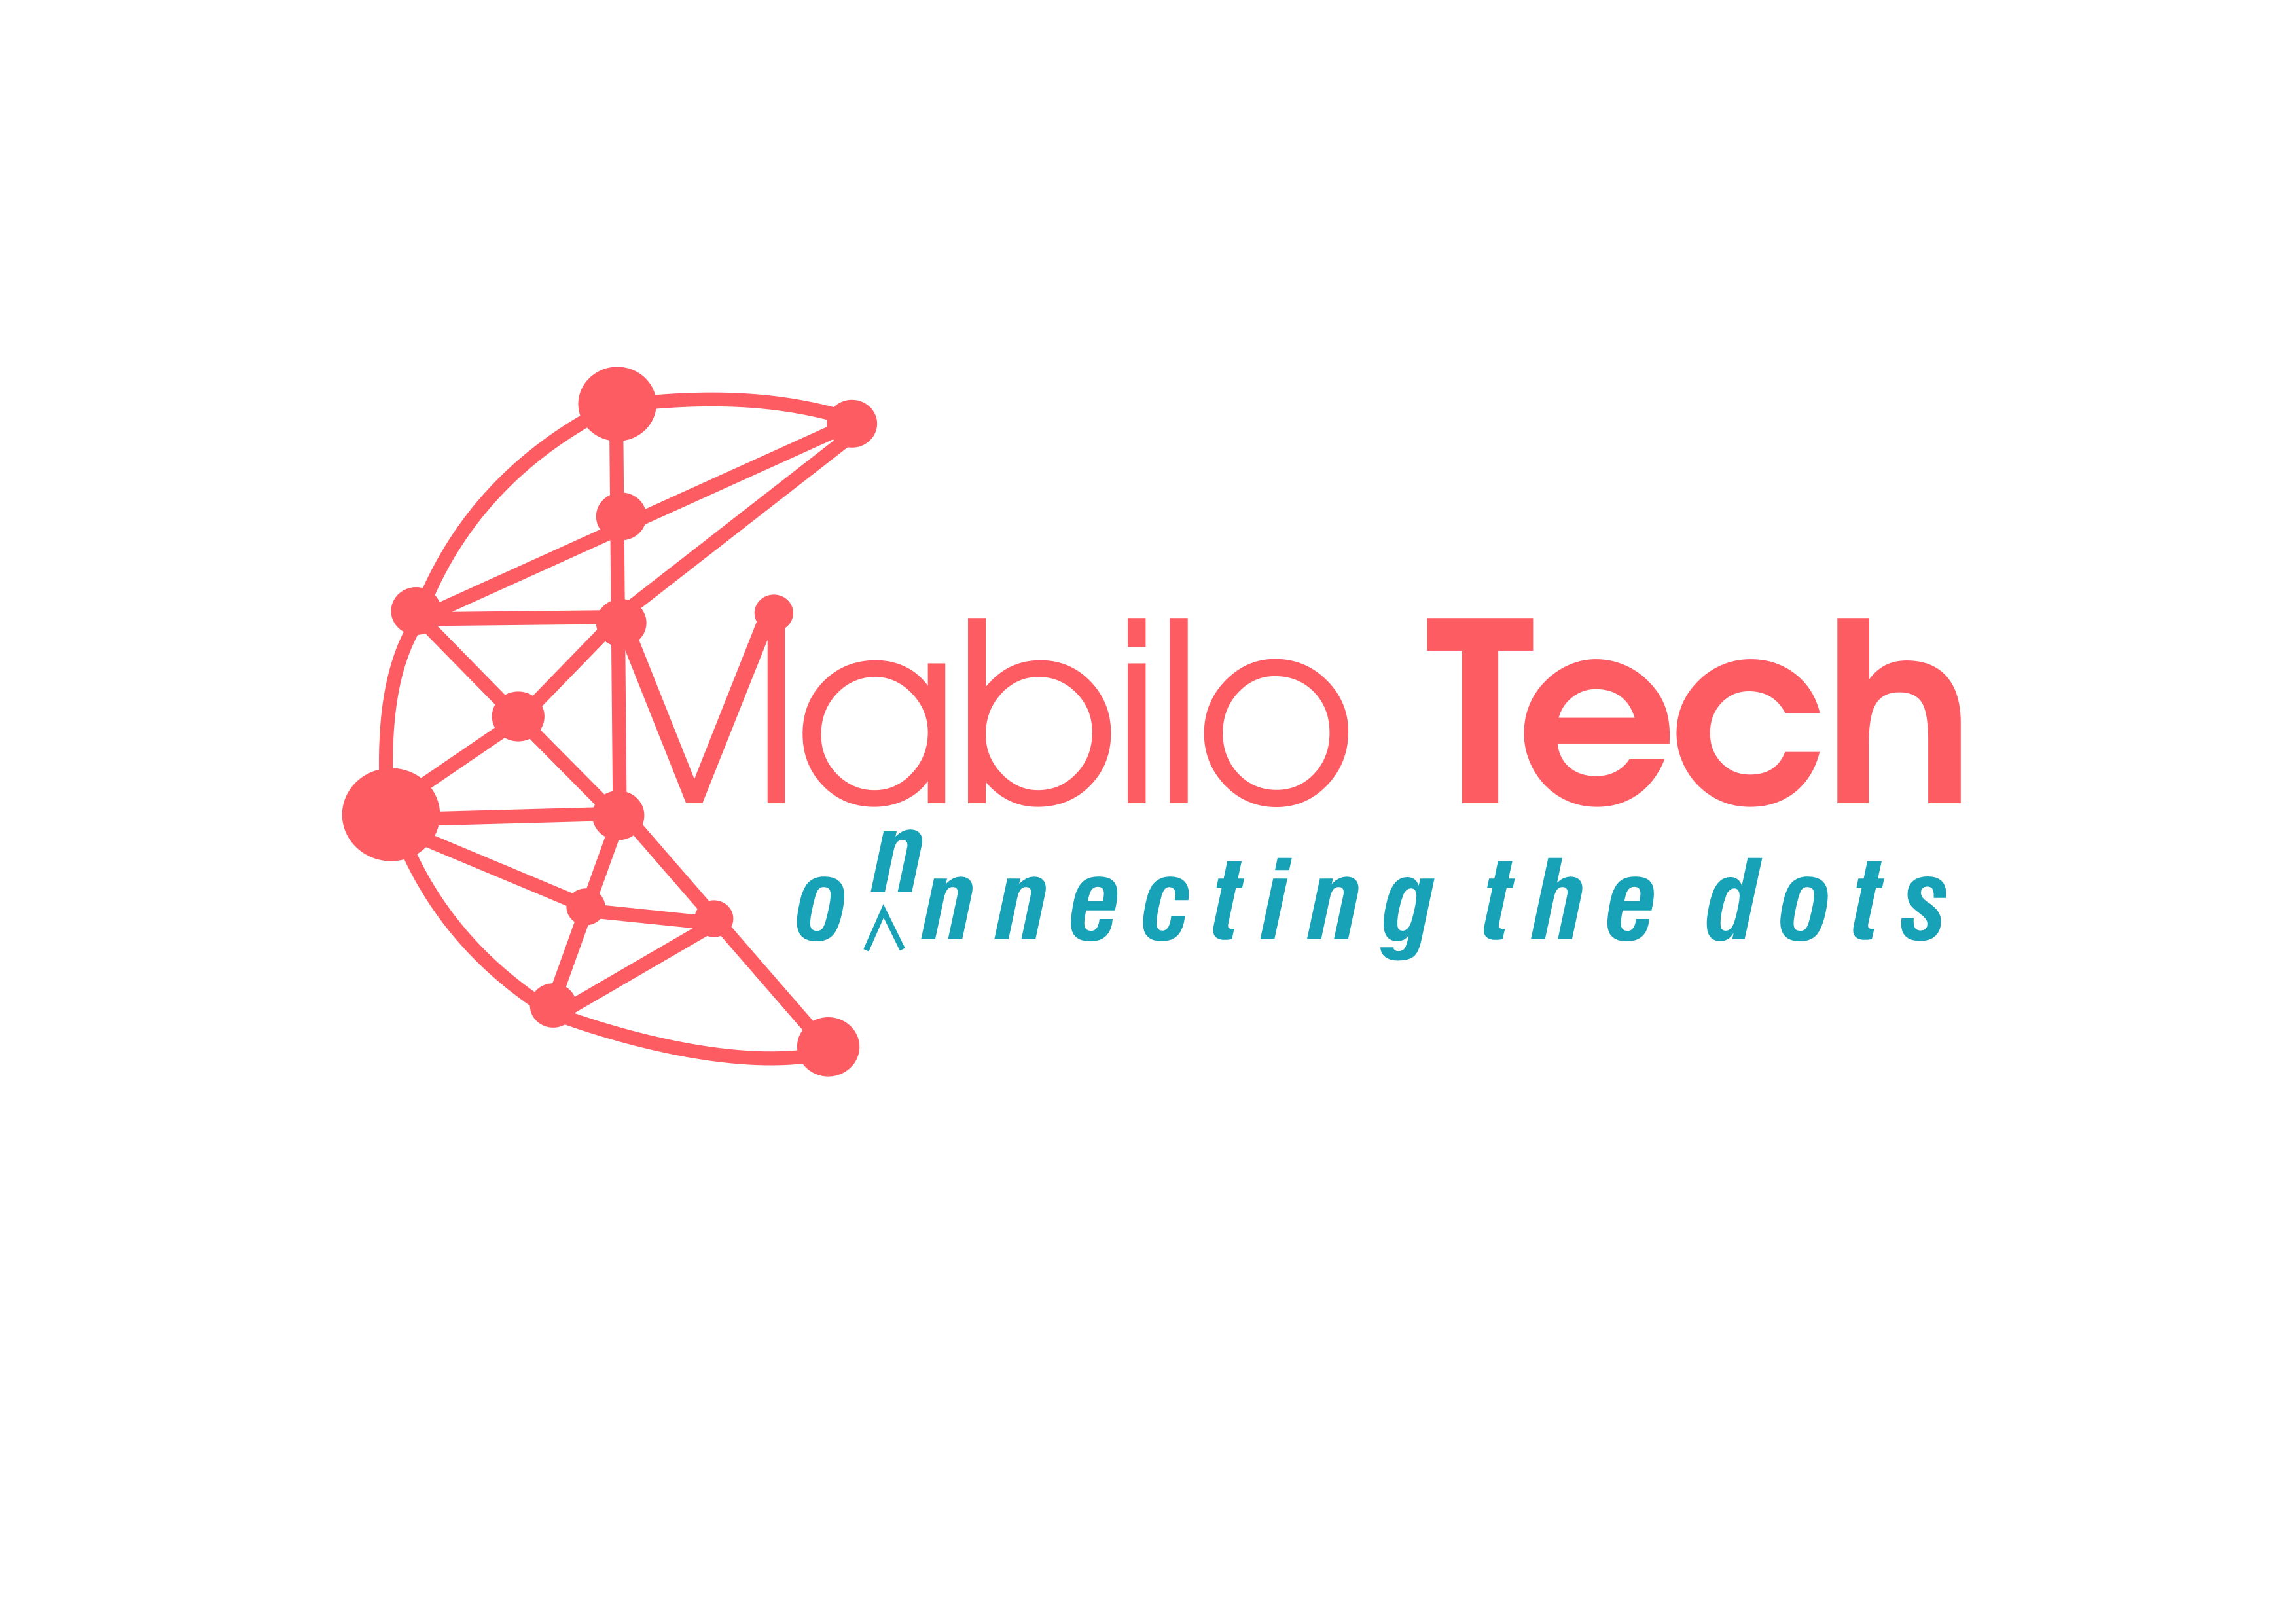 Mabilo Tech Pty Ltd